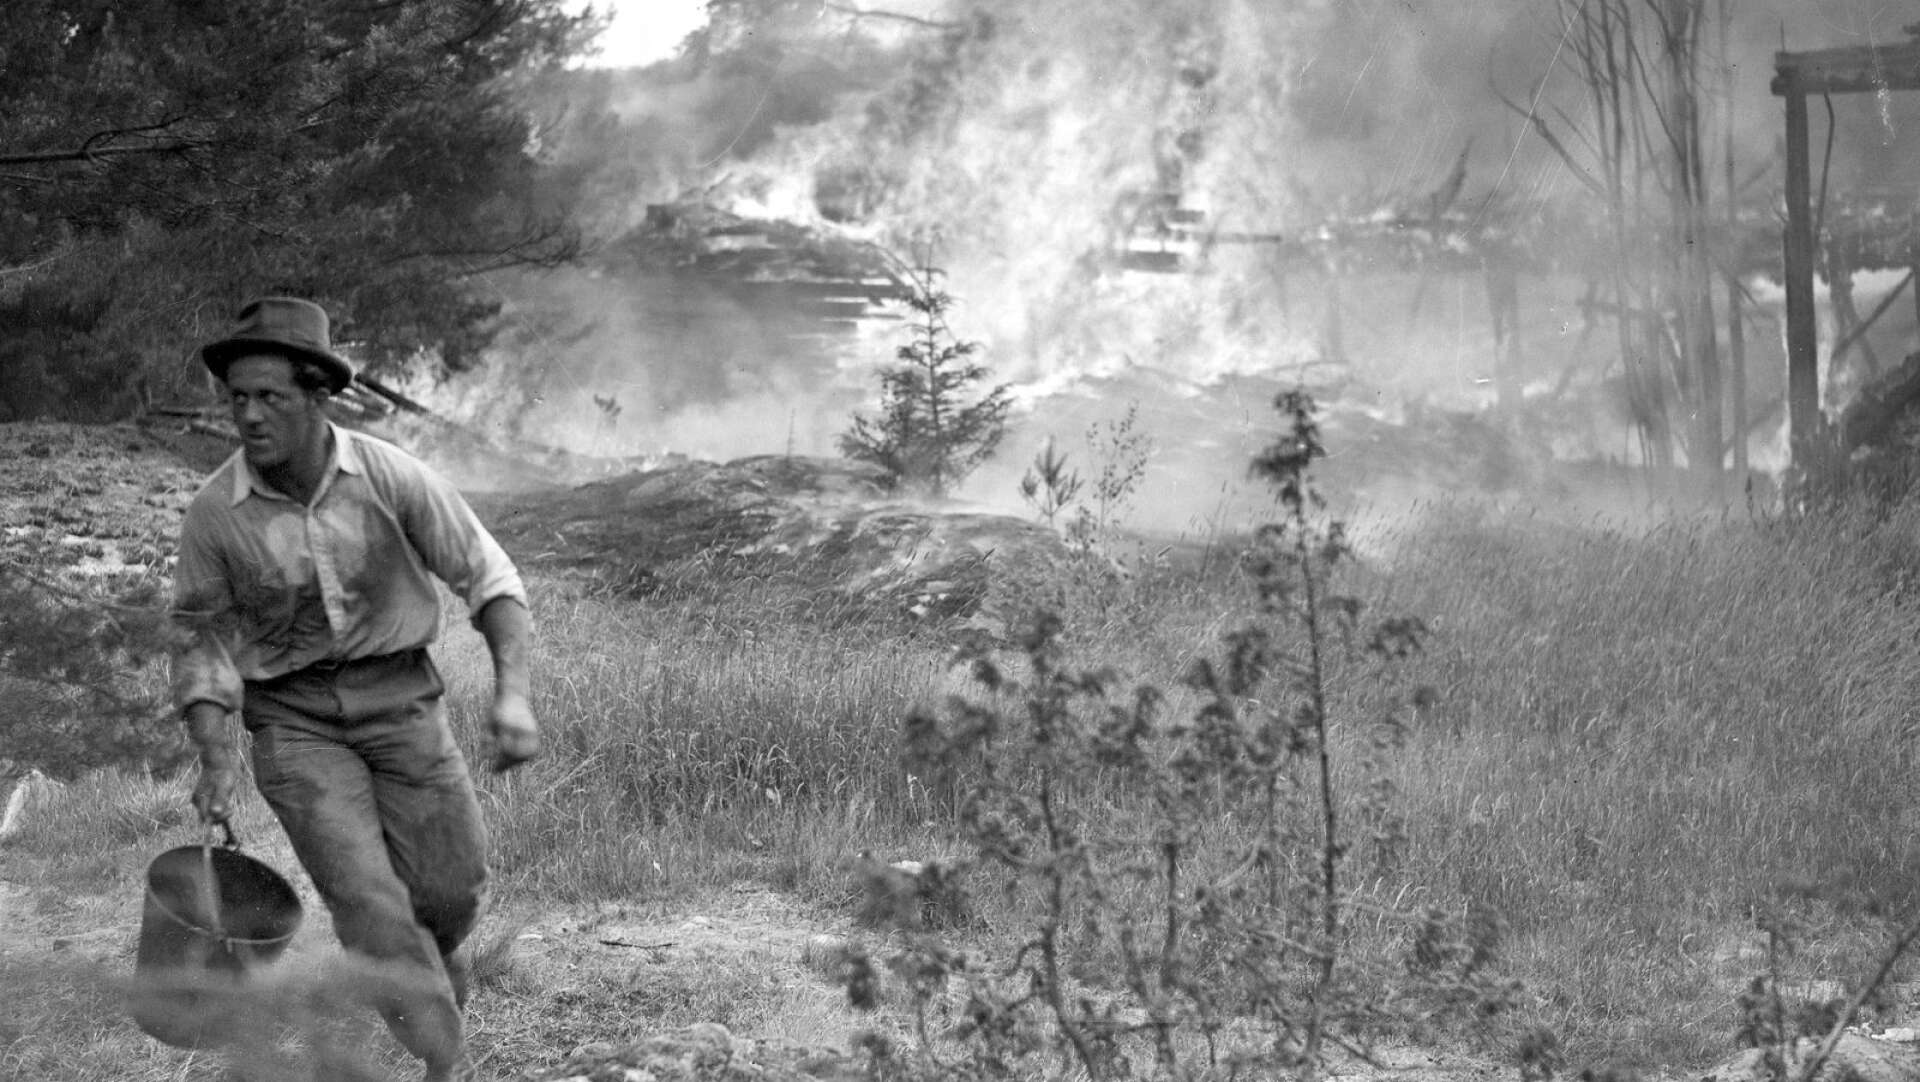 En man springer med en hink för att hämta vatten när elden härjar ekonomibyggnaderna på Trangärdstorps gård den 15 juli 1941. Flera byggnader på gården slukades av eldens lågor. 35 år senare brinner även herrgården.